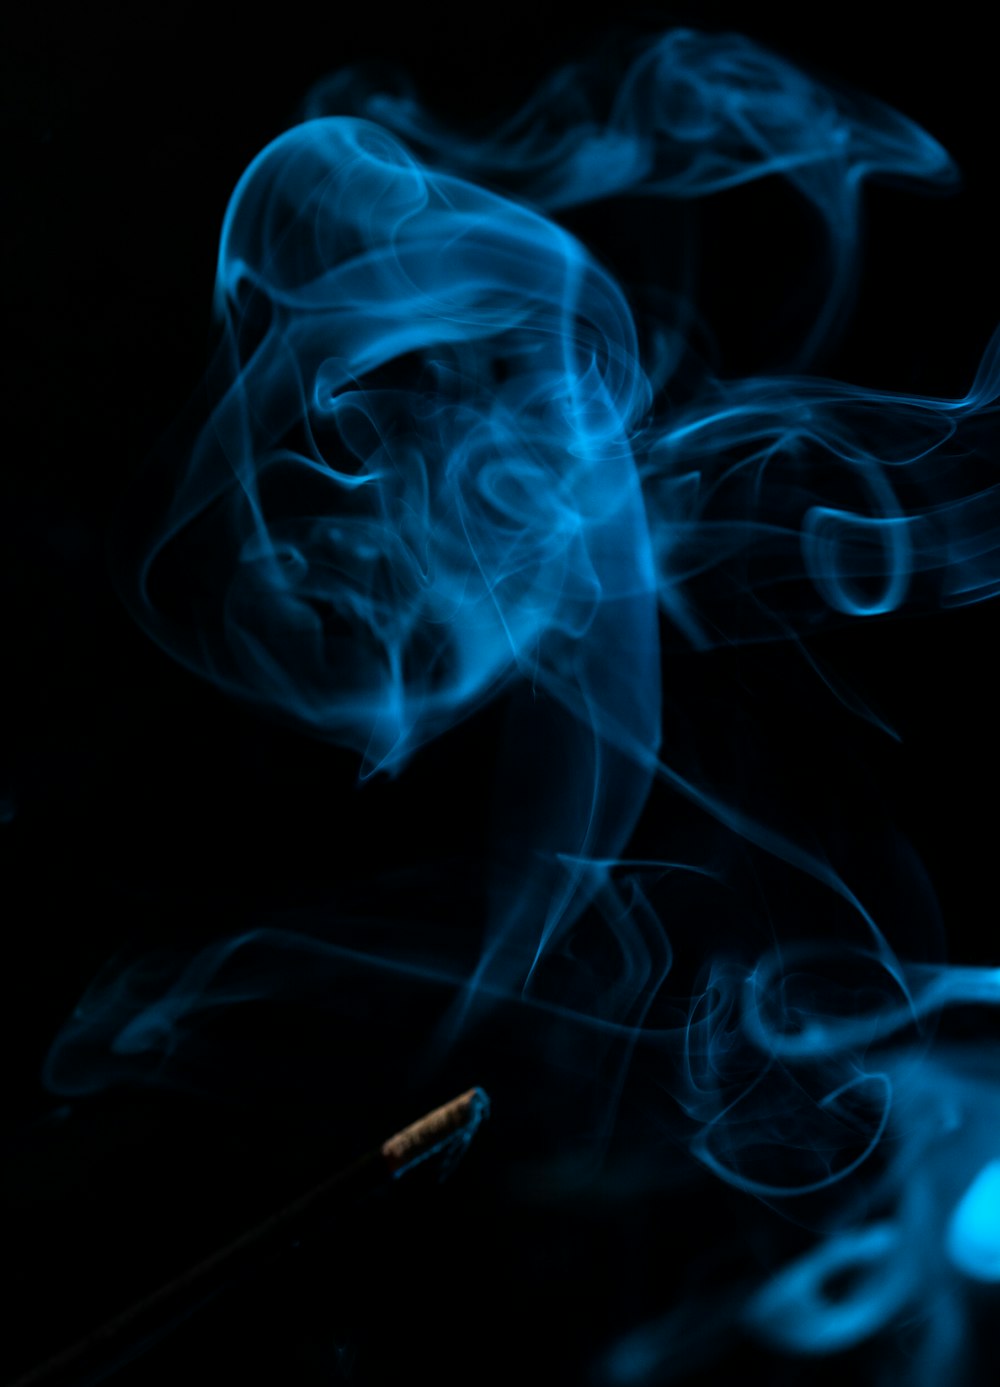 Papel pintado de humo azul